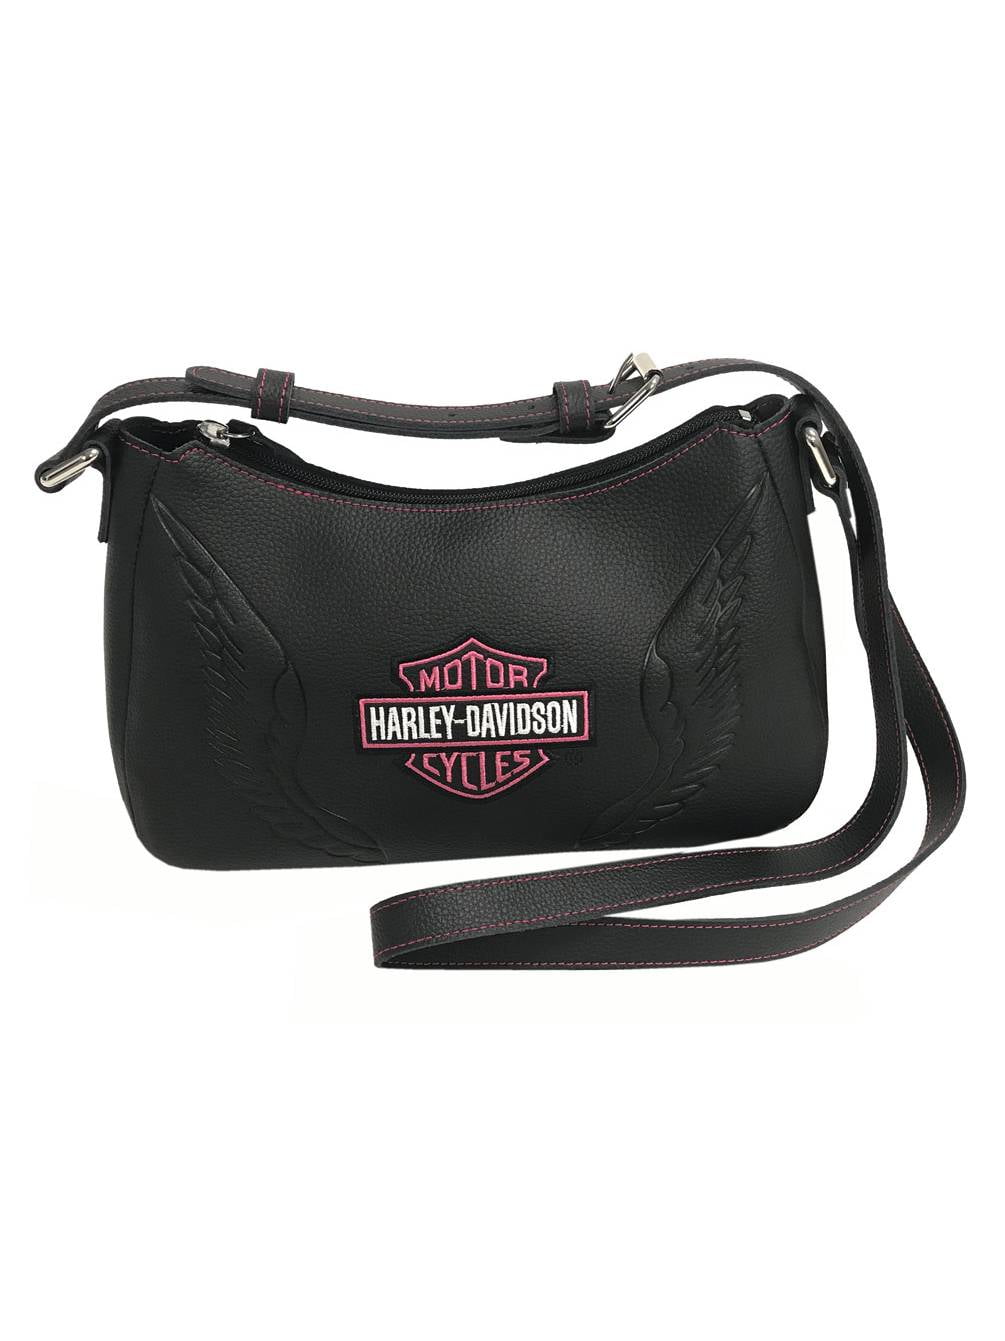 Harley Davidson Women's Shoulder Bags - Black